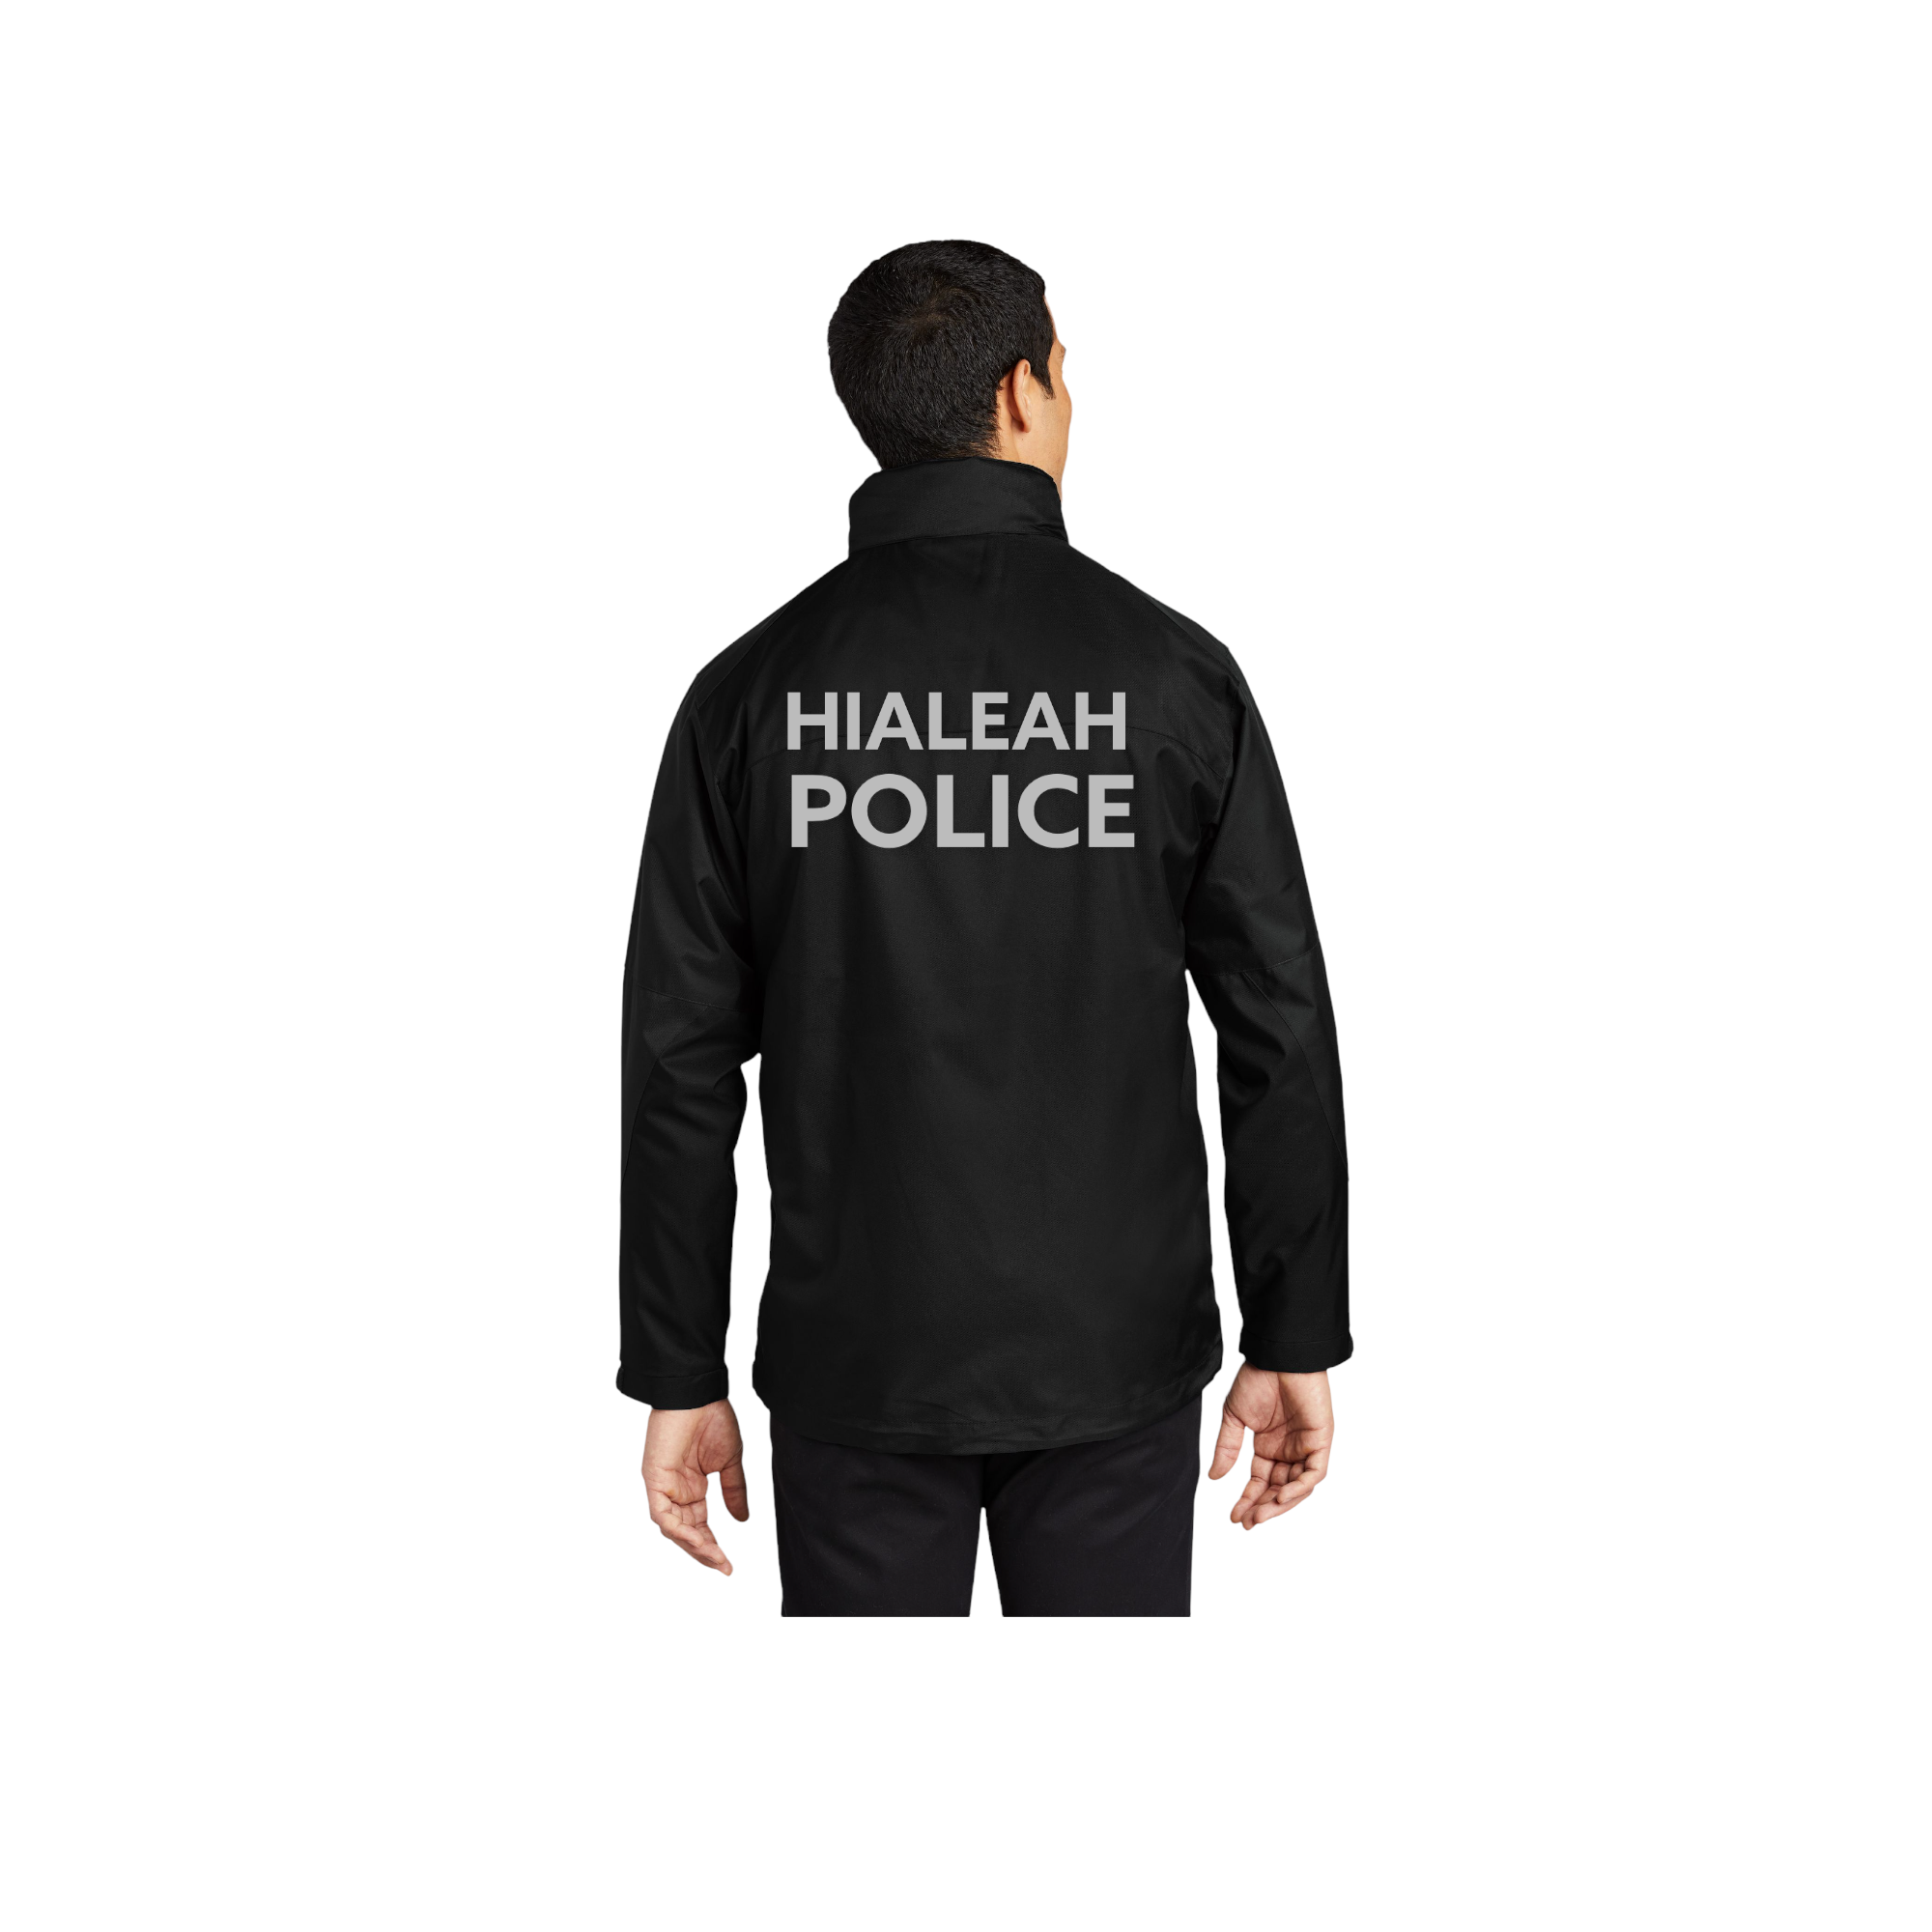 Hialeah Police Department Endeavor Jacket